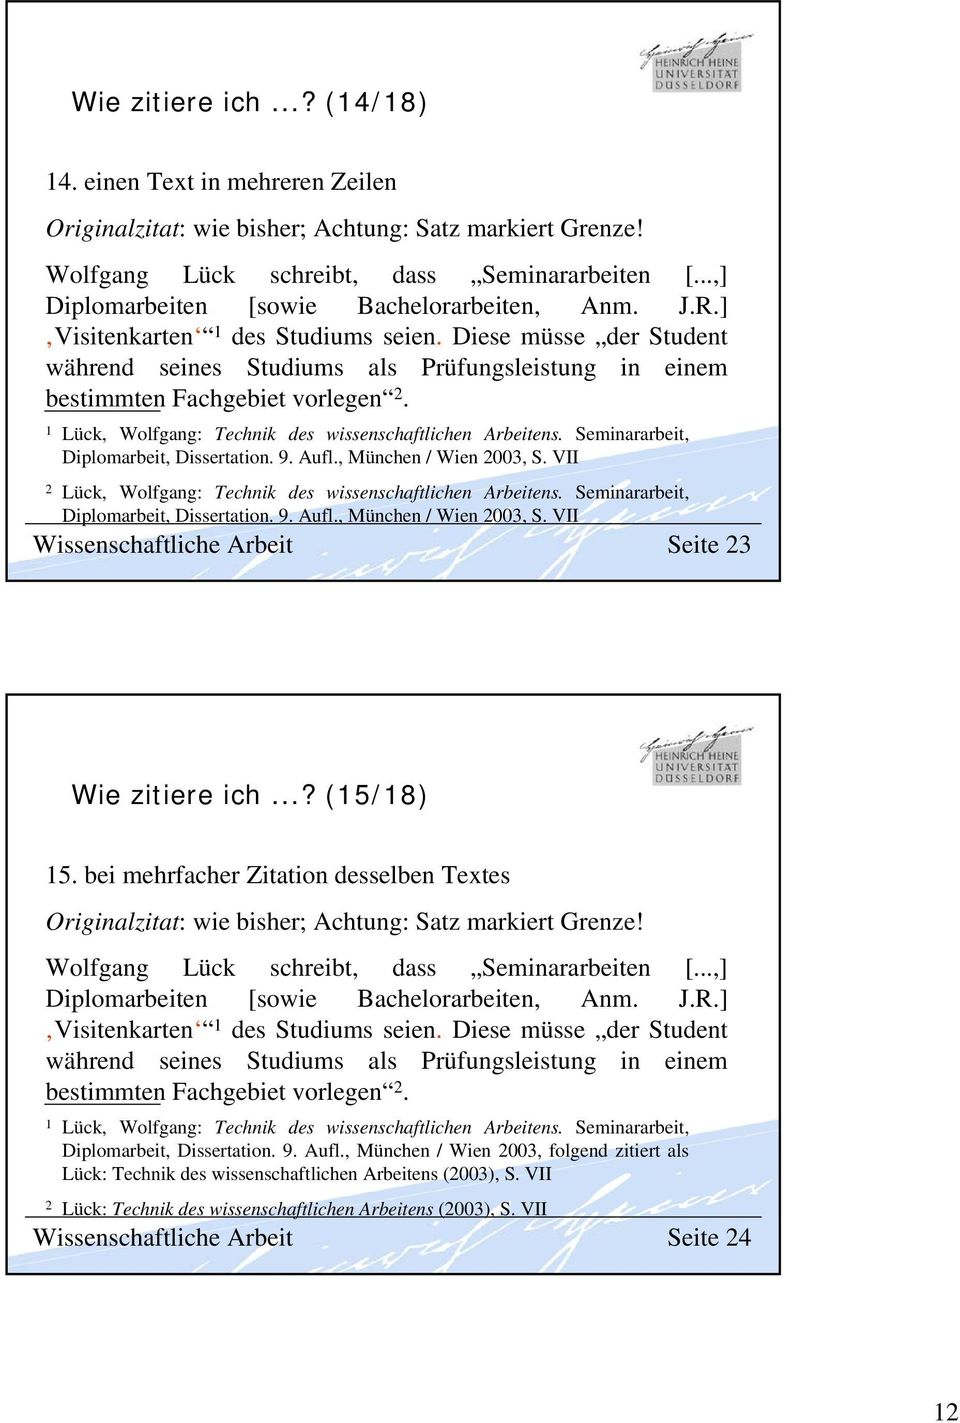 Diese müsse der Student während seines Studiums als Prüfungsleistung in einem bestimmten Fachgebiet vorlegen 2. Diplomarbeit, Dissertation. 9. Aufl., München / Wien 2003, S.